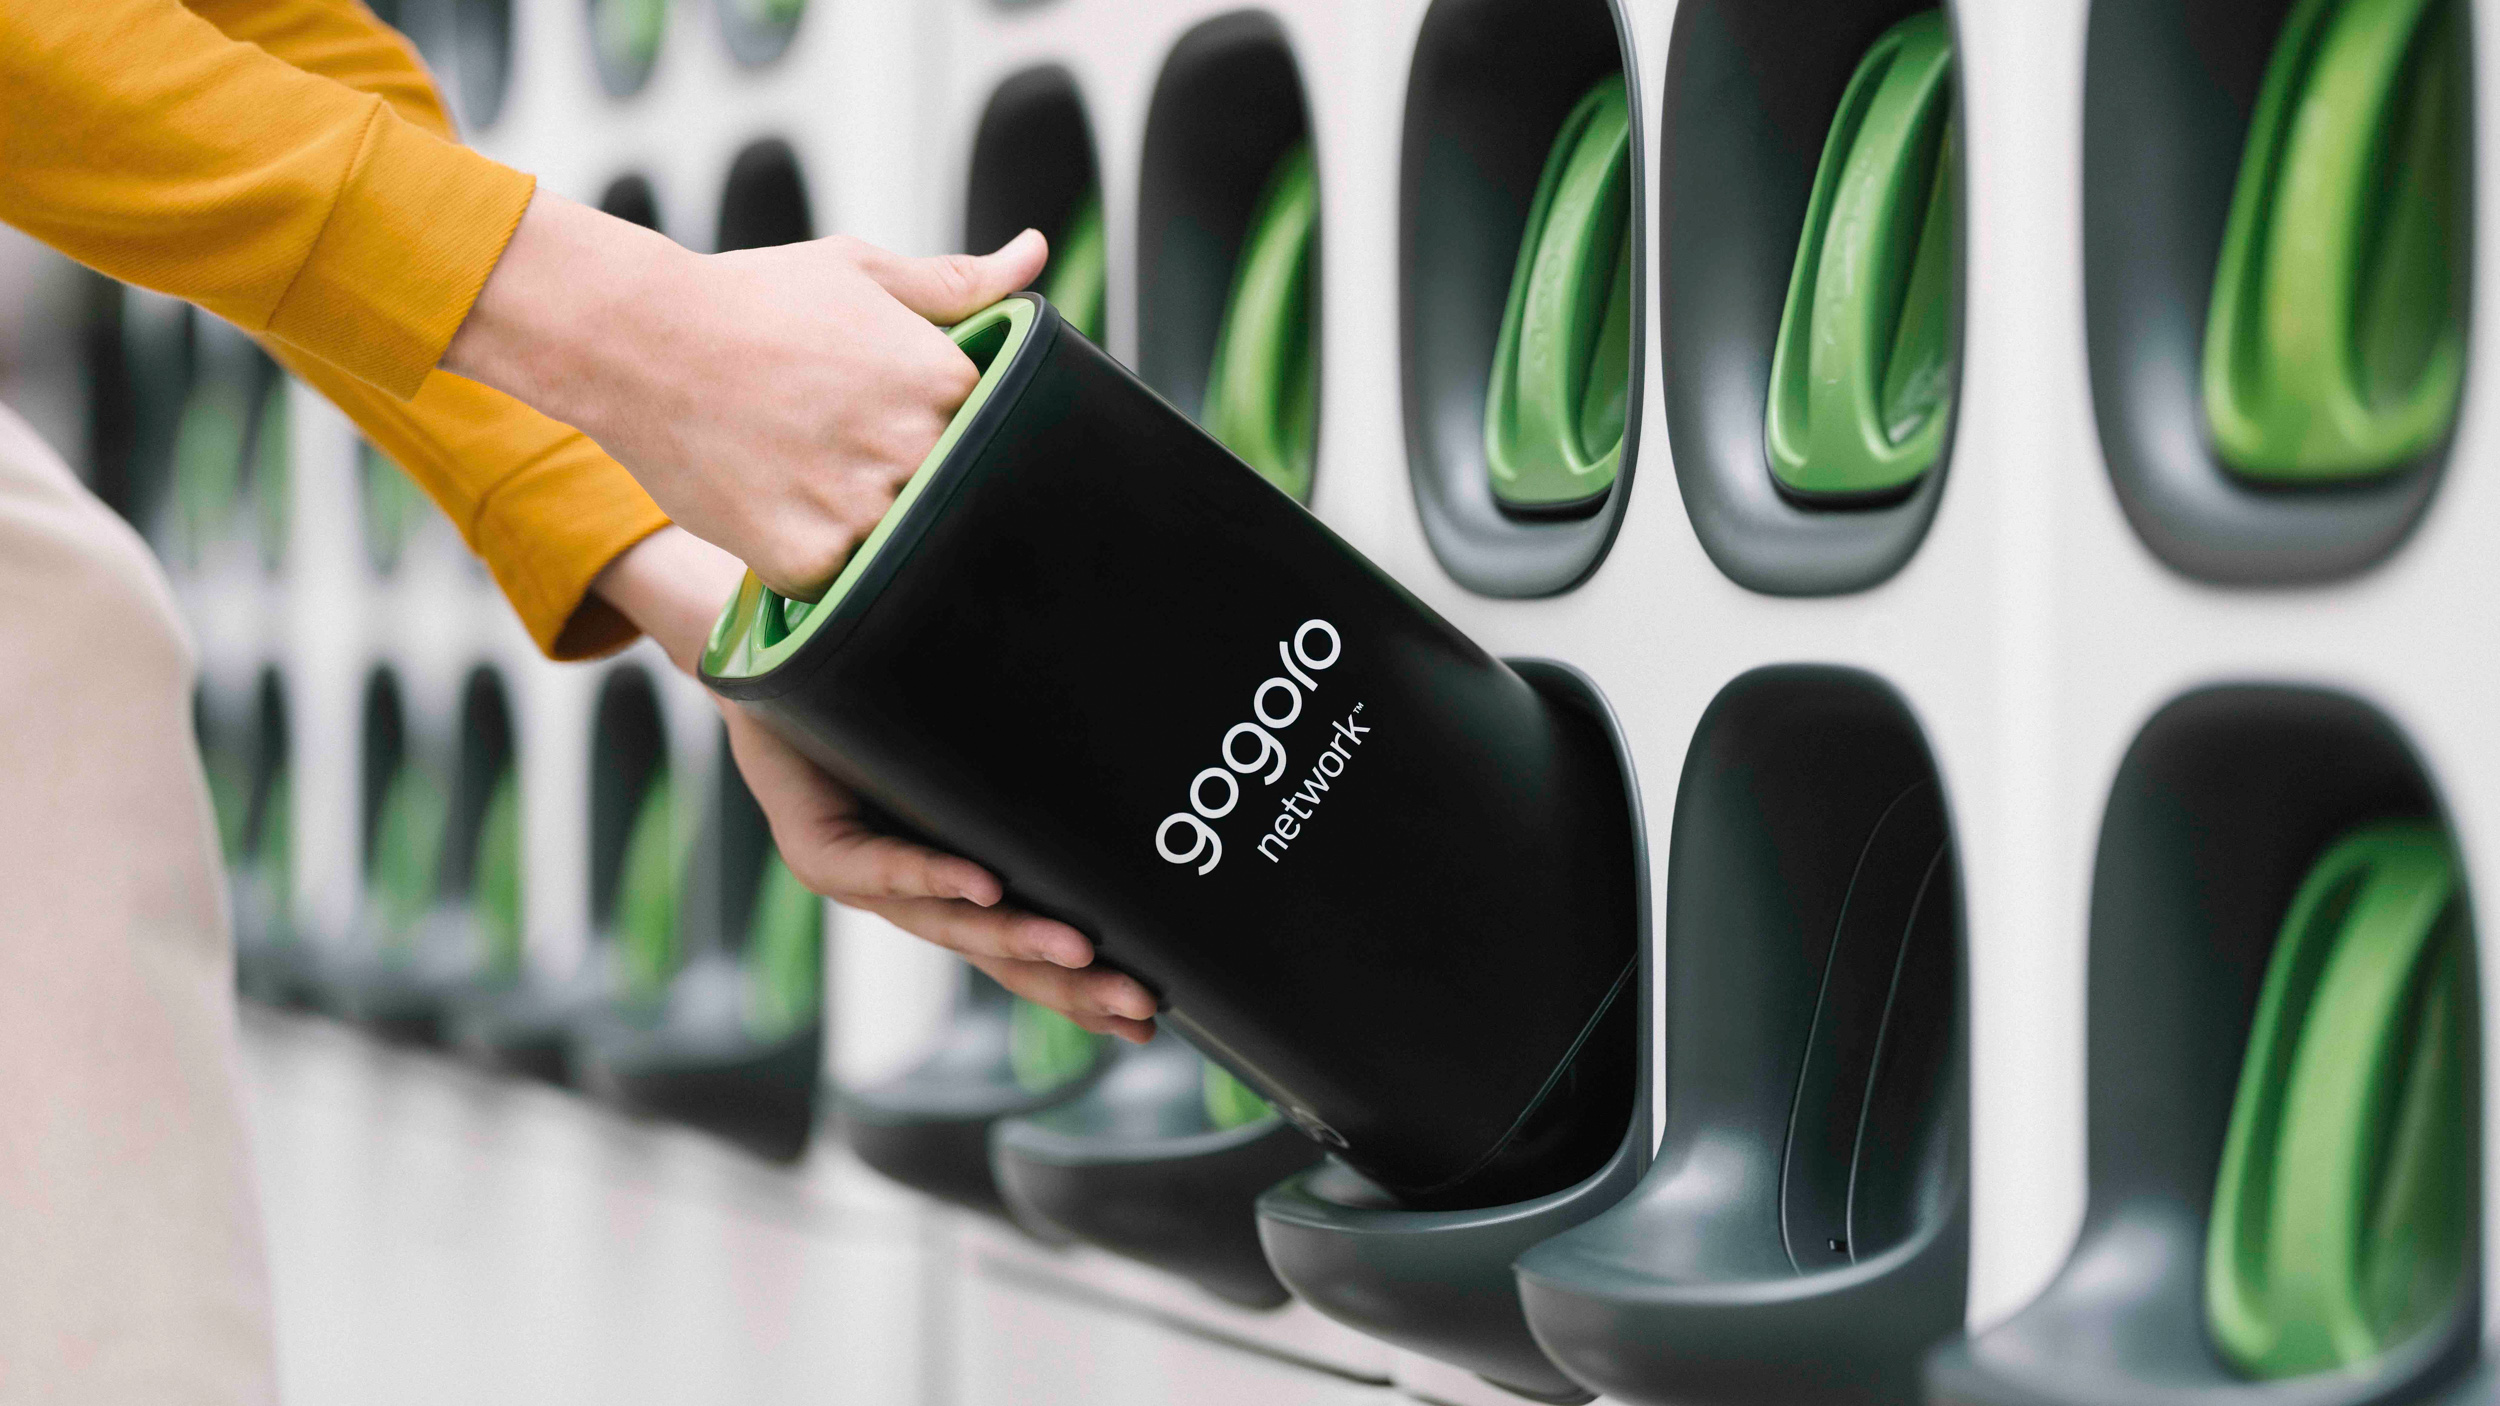 國際知名研究顧問公司評選 Gogoro 為全球最佳輕型電動車電池交換品牌